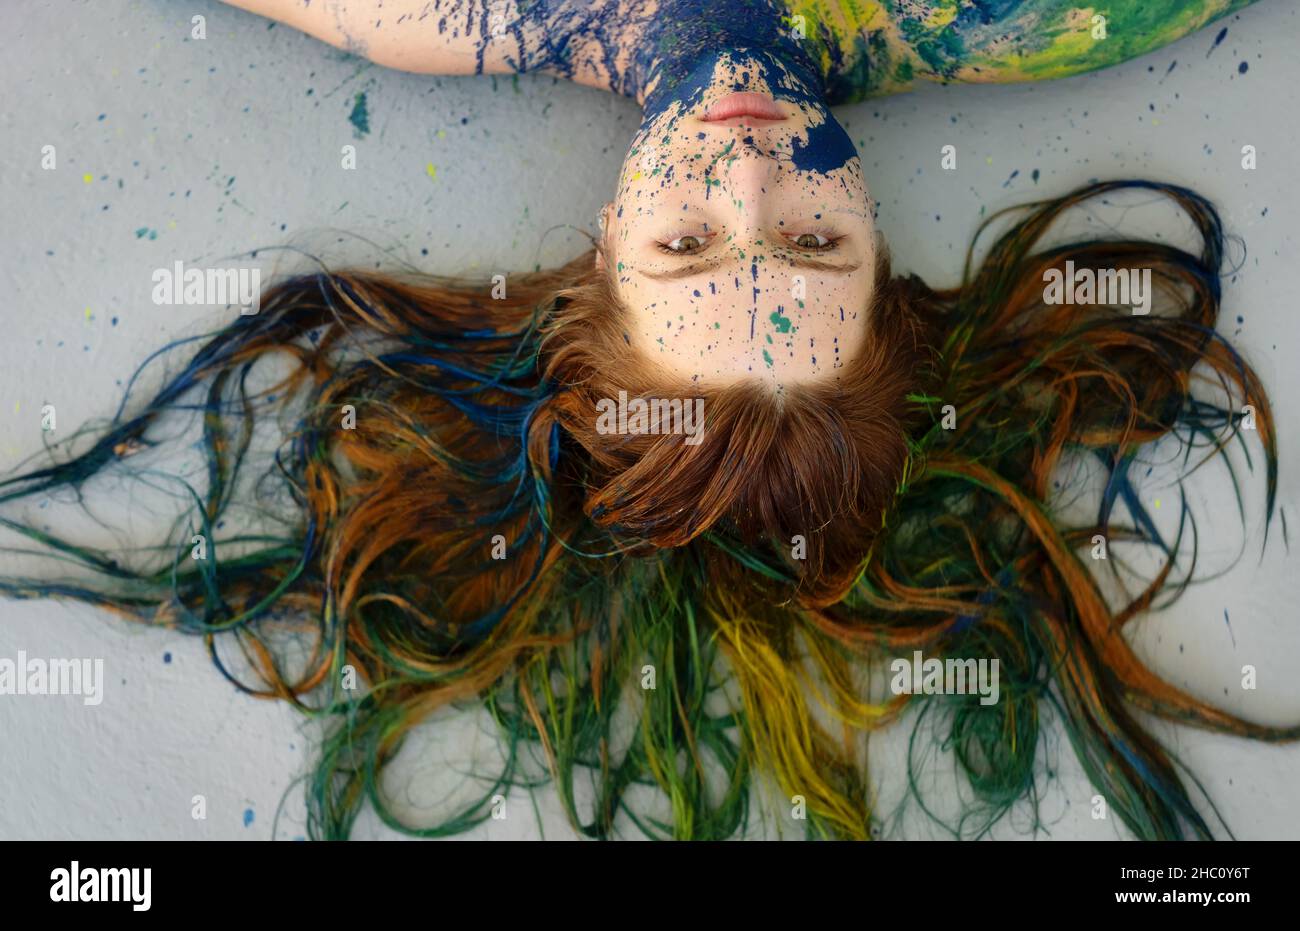 remarquable inhabituel portrait impressionnant d'une jeune femme brunette à tête rouge à poil long, points de peinture bleue et verte, expressiv créatif décoratif Banque D'Images